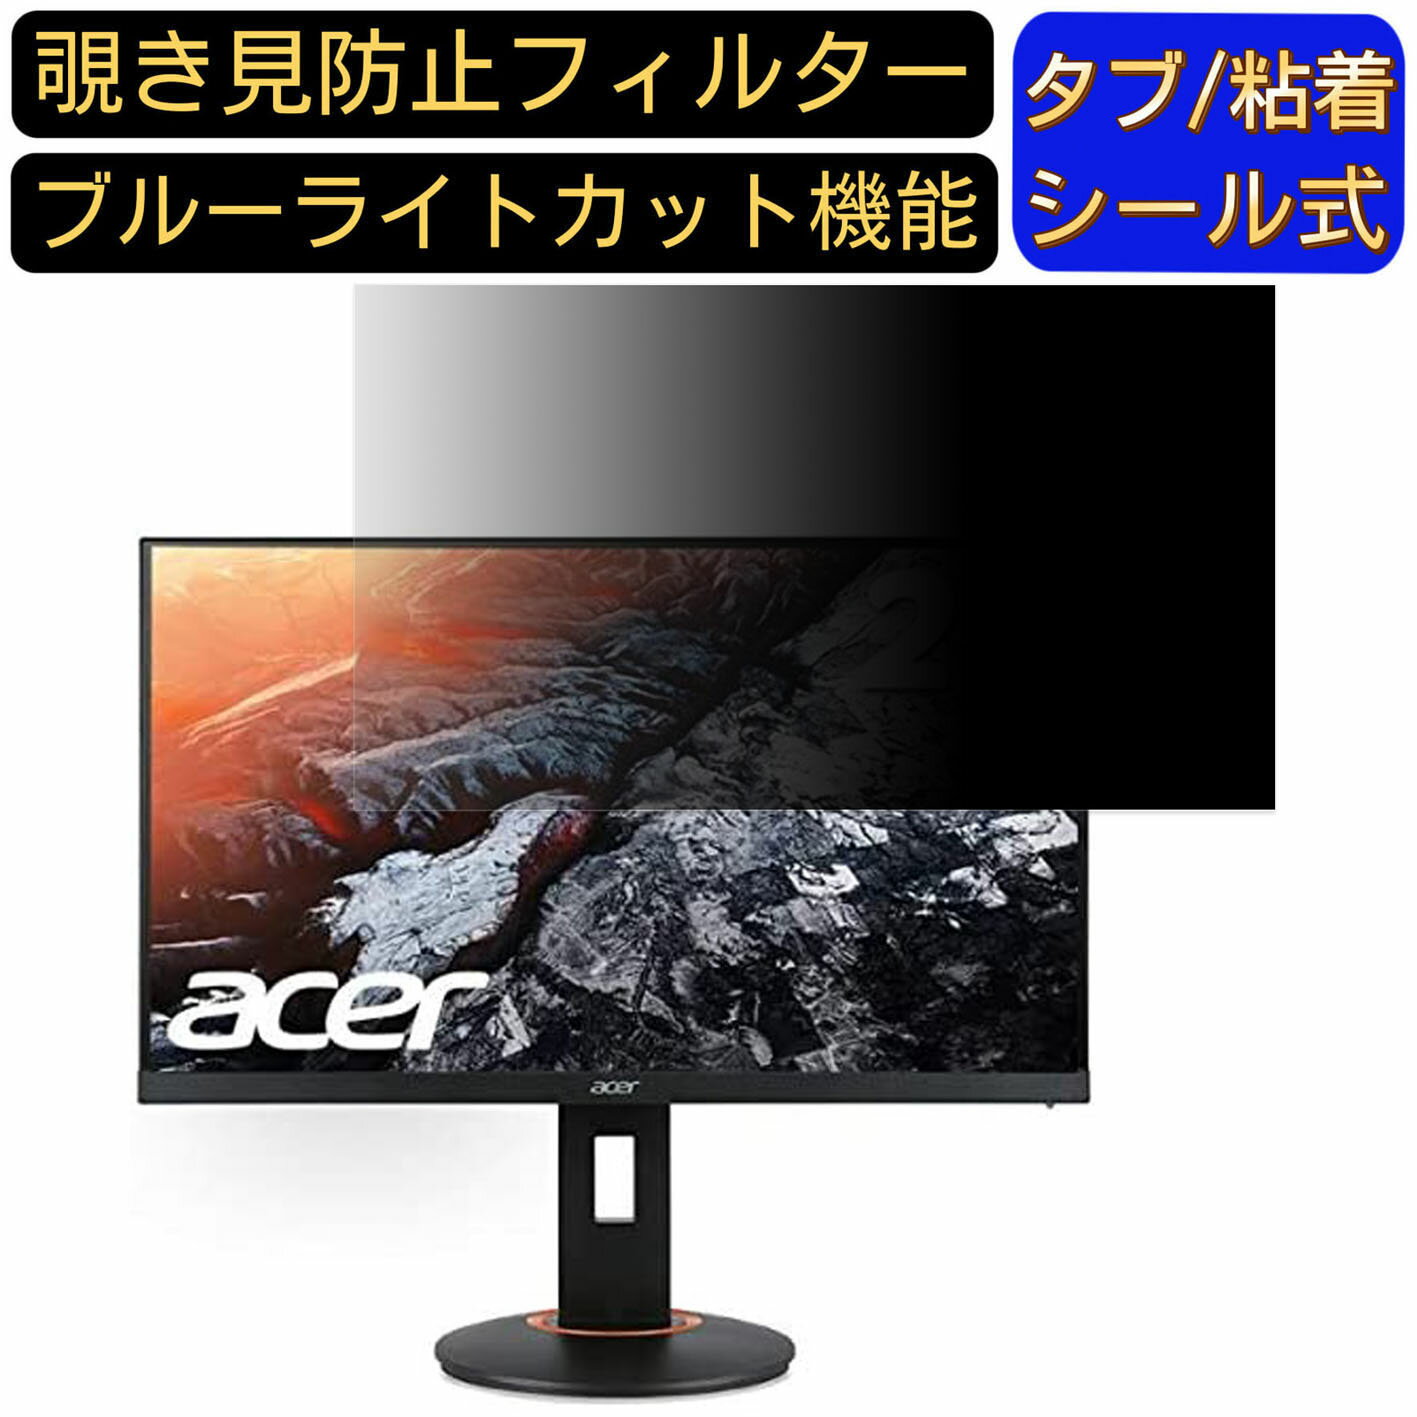 【ポイント2倍】Acer XF270HCbmiiprx 27イ